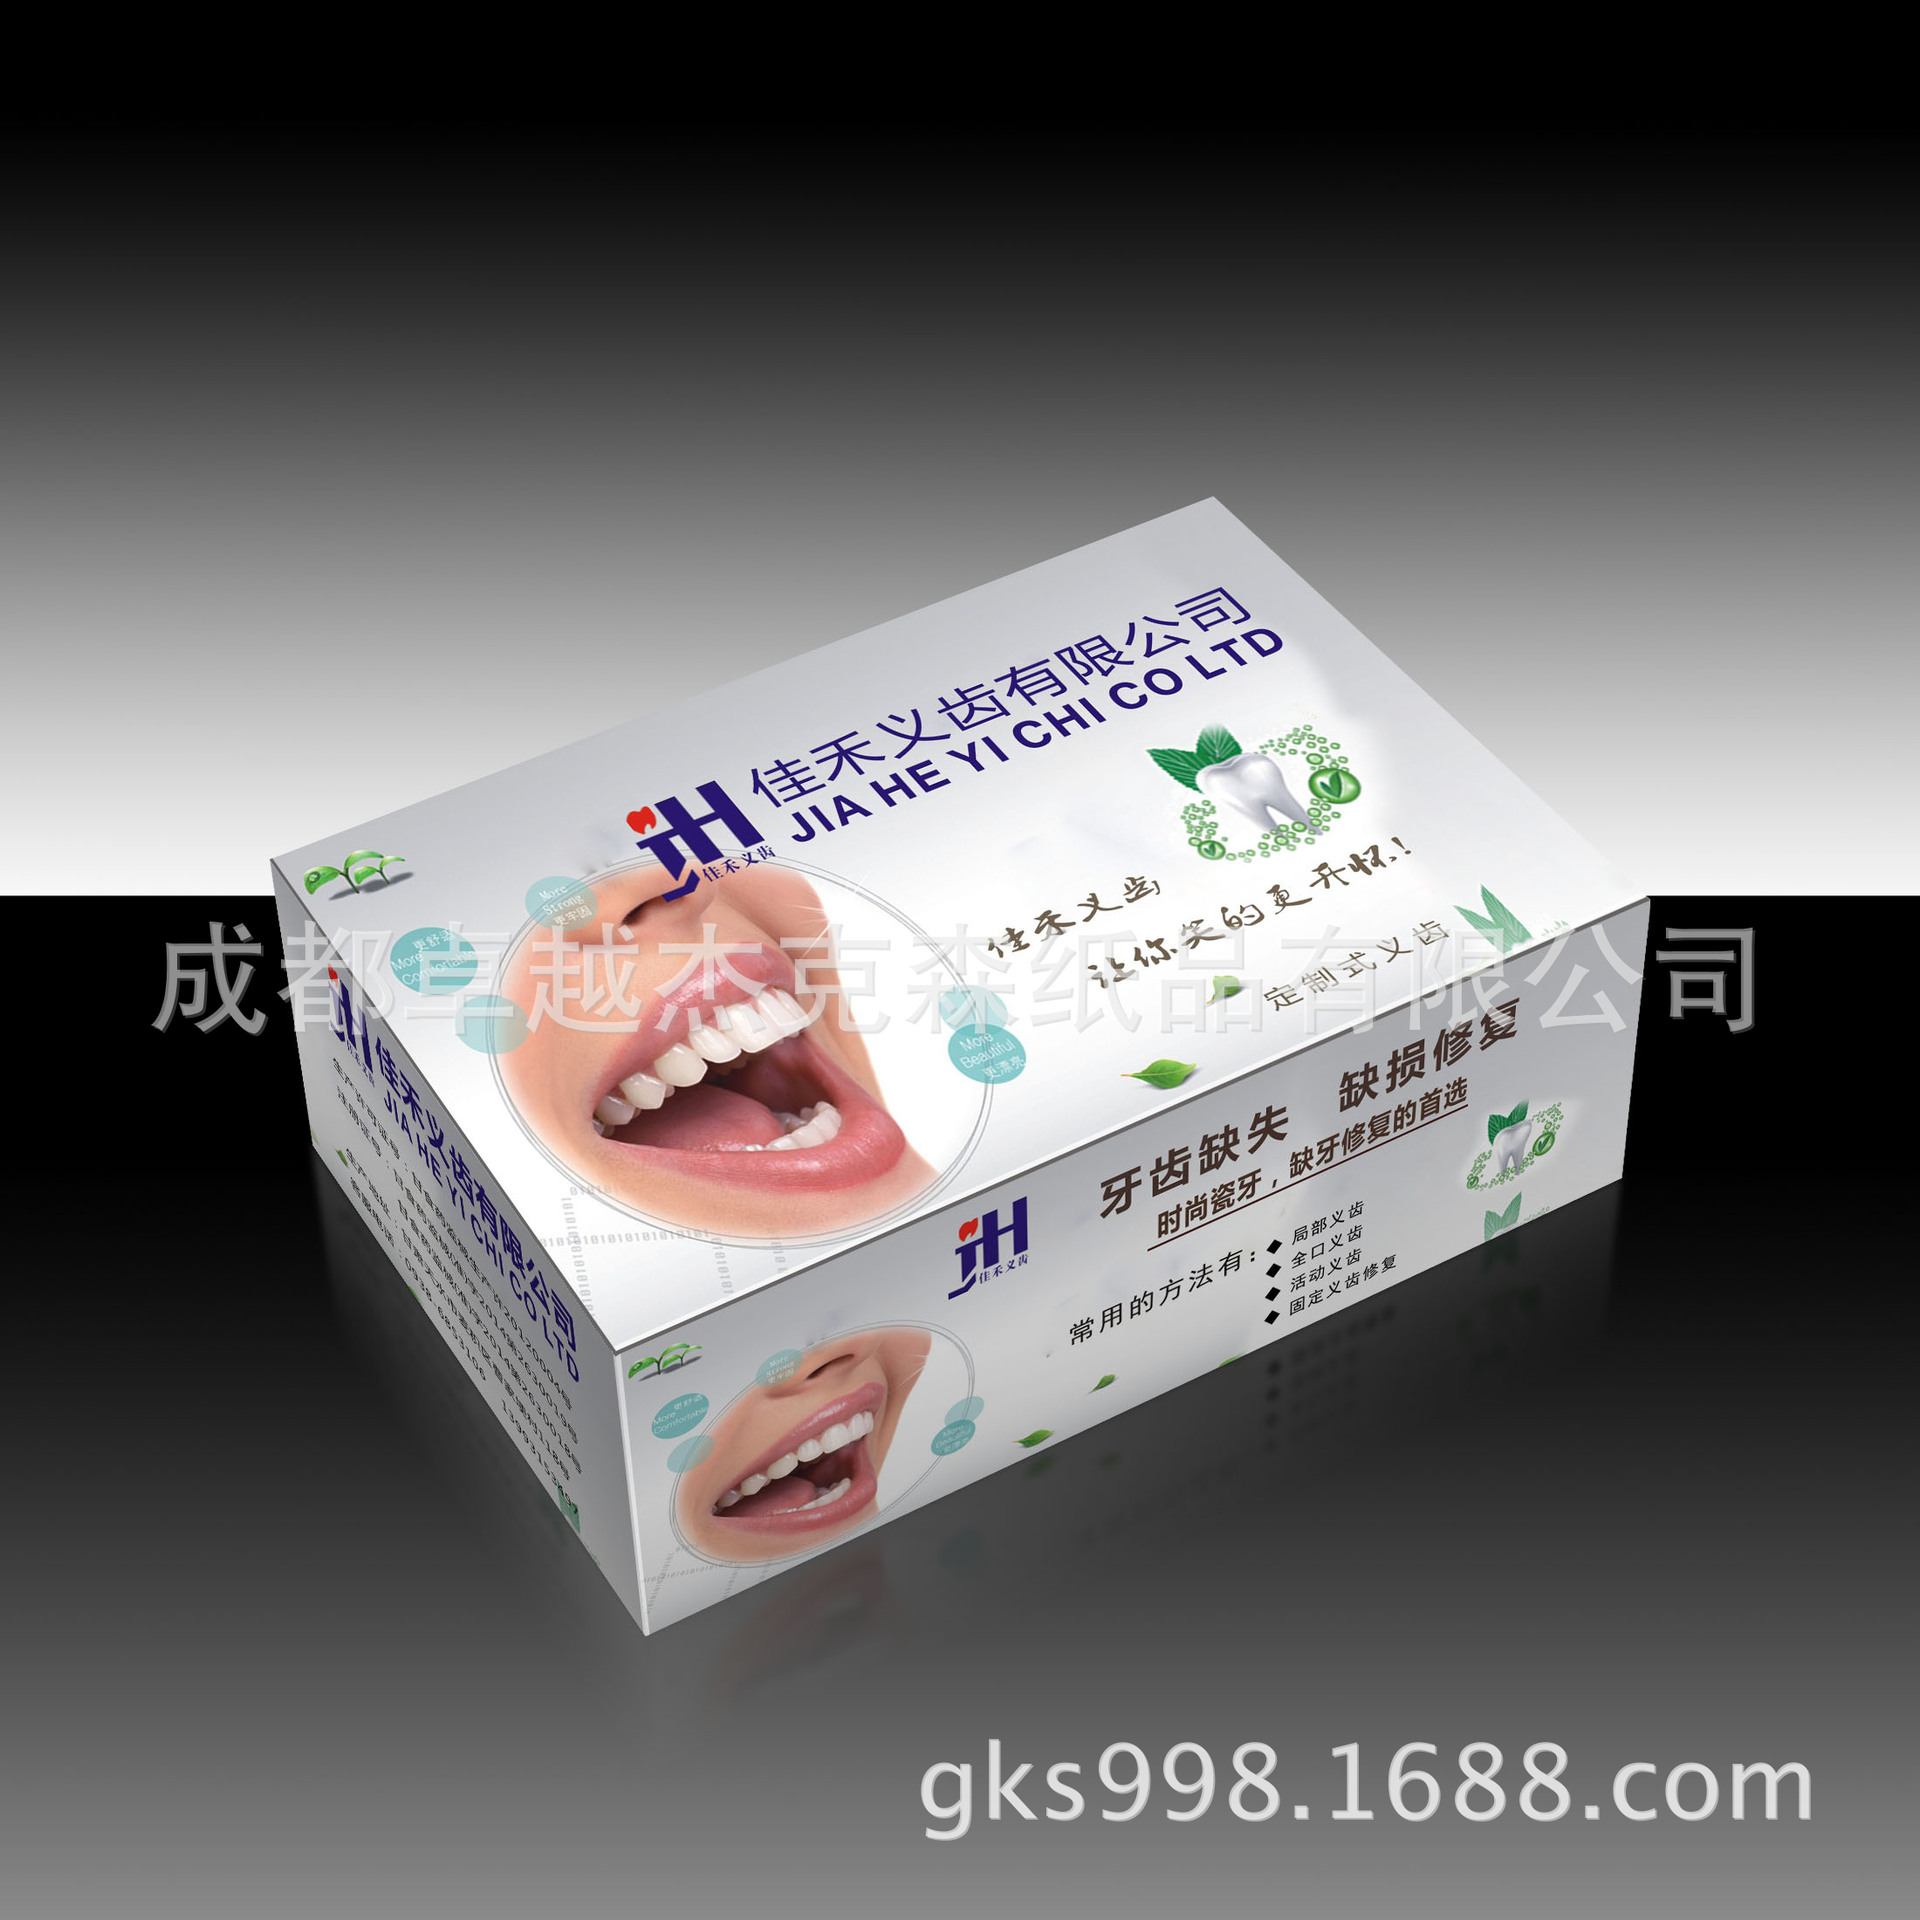 定制式义齿包装盒生产厂家牙模包装盒定制白卡纸彩印折叠纸盒设计